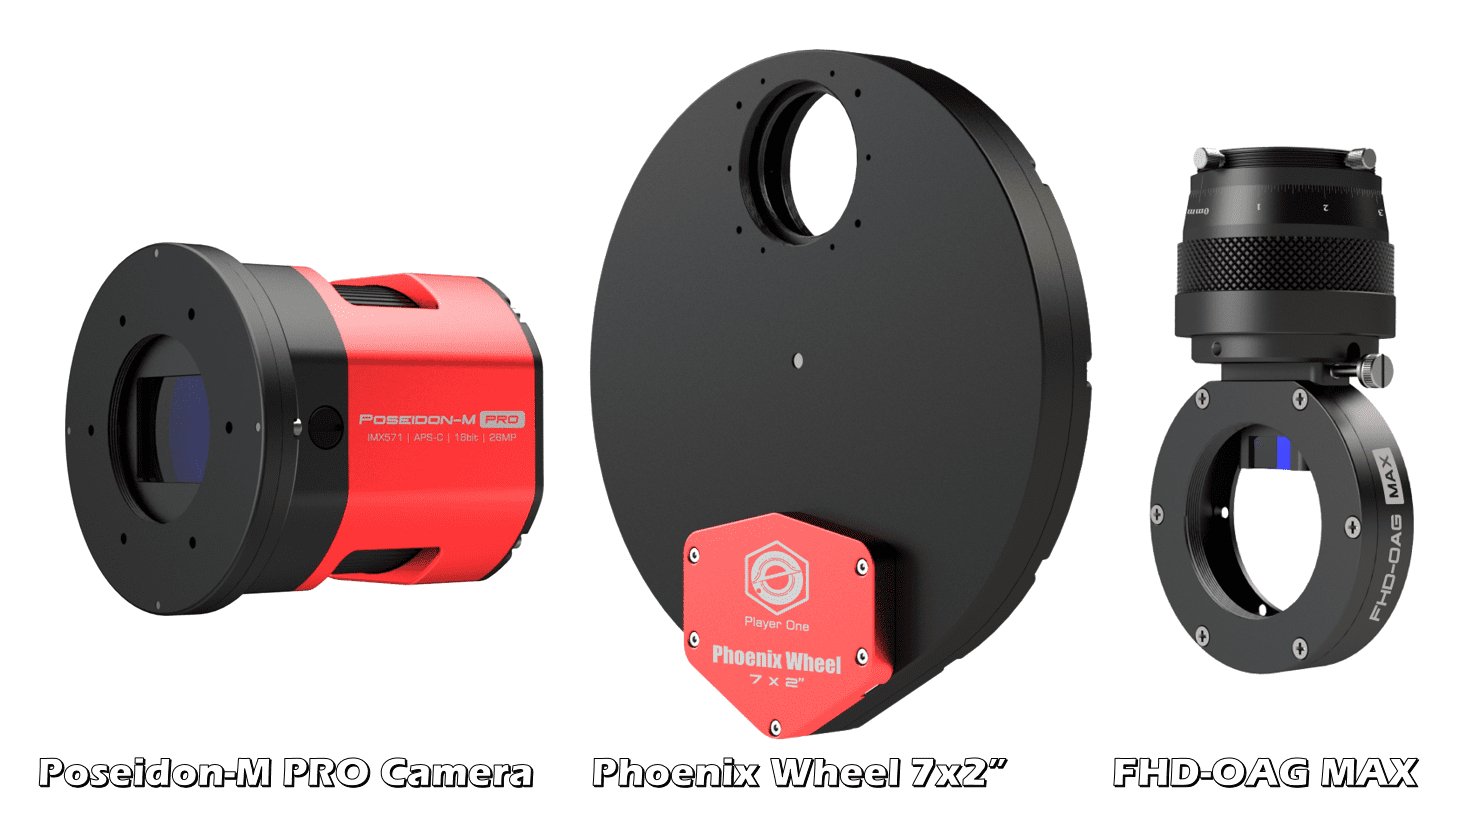 Player One Poseidon-M Pro (IMX571) Cooled Camera Camera + Phoenix Wheel 7x2